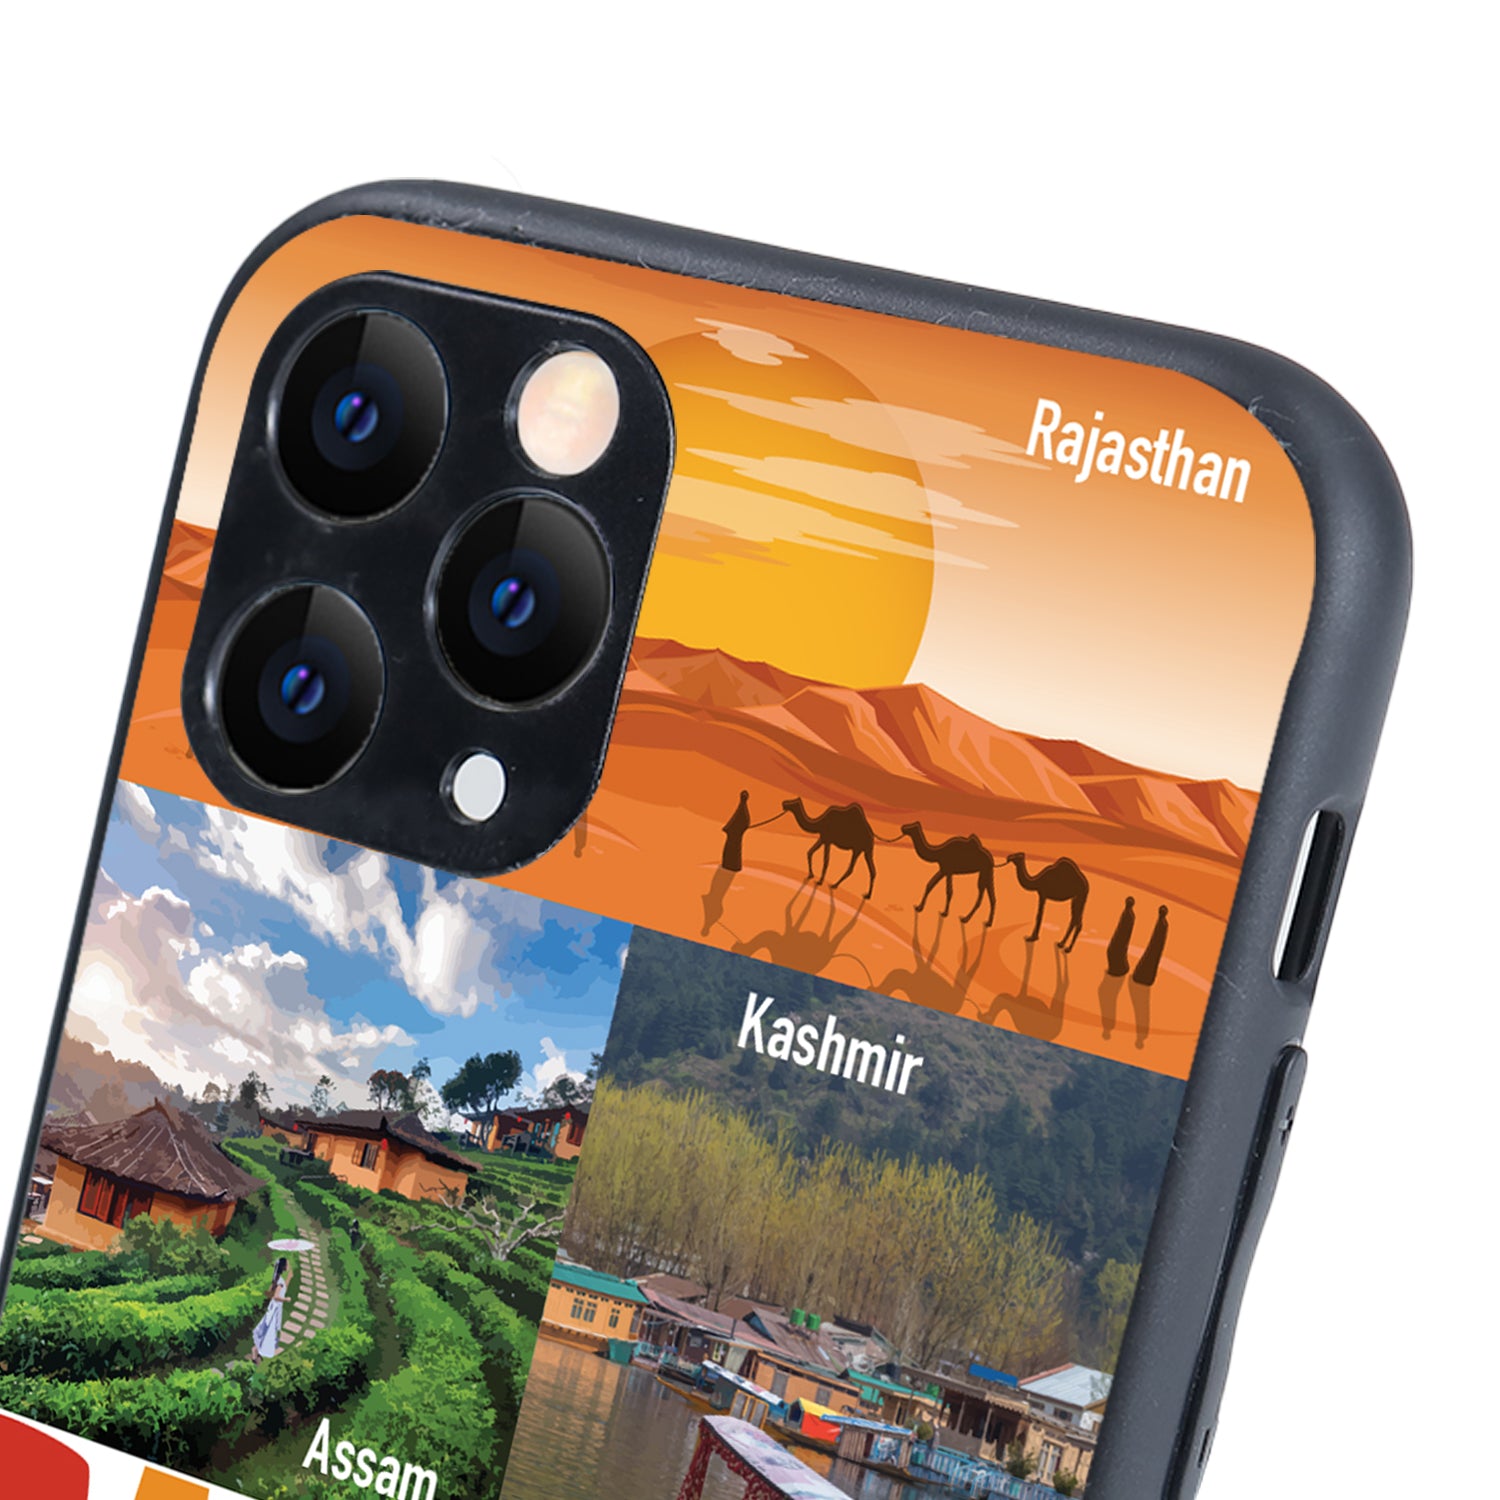 Banjara Travel iPhone 11 Pro Case